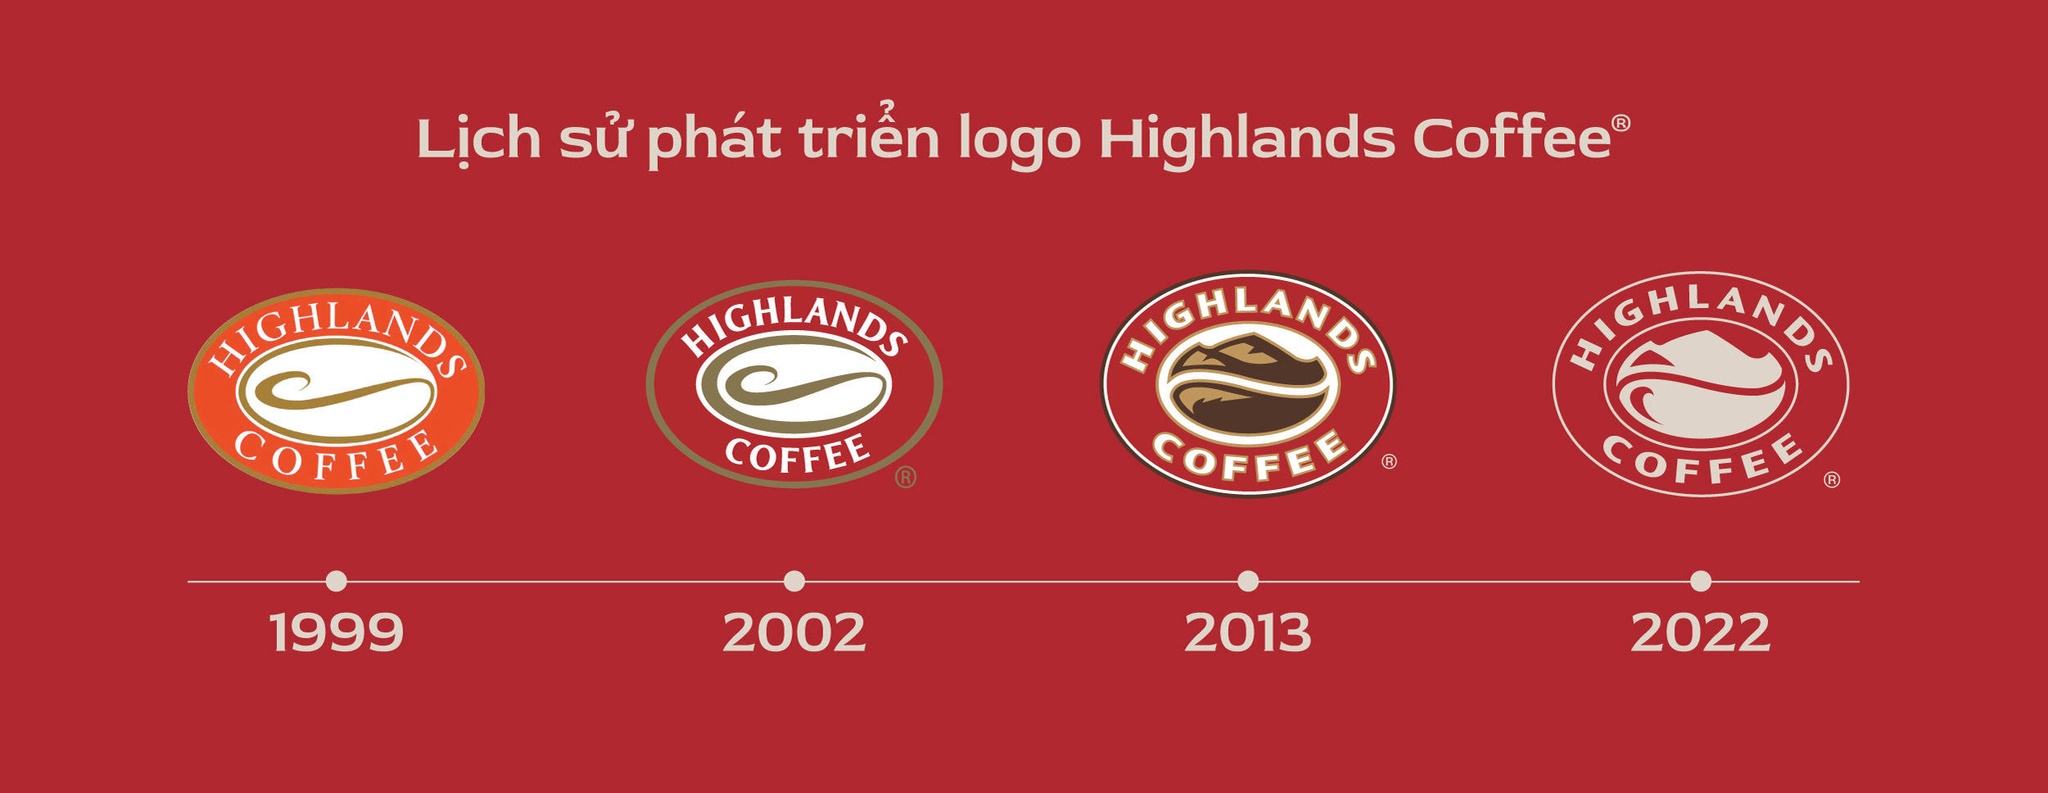 Highlands Coffee làm mới logo và ra mắt thông điệp hướng về cộng đồng 